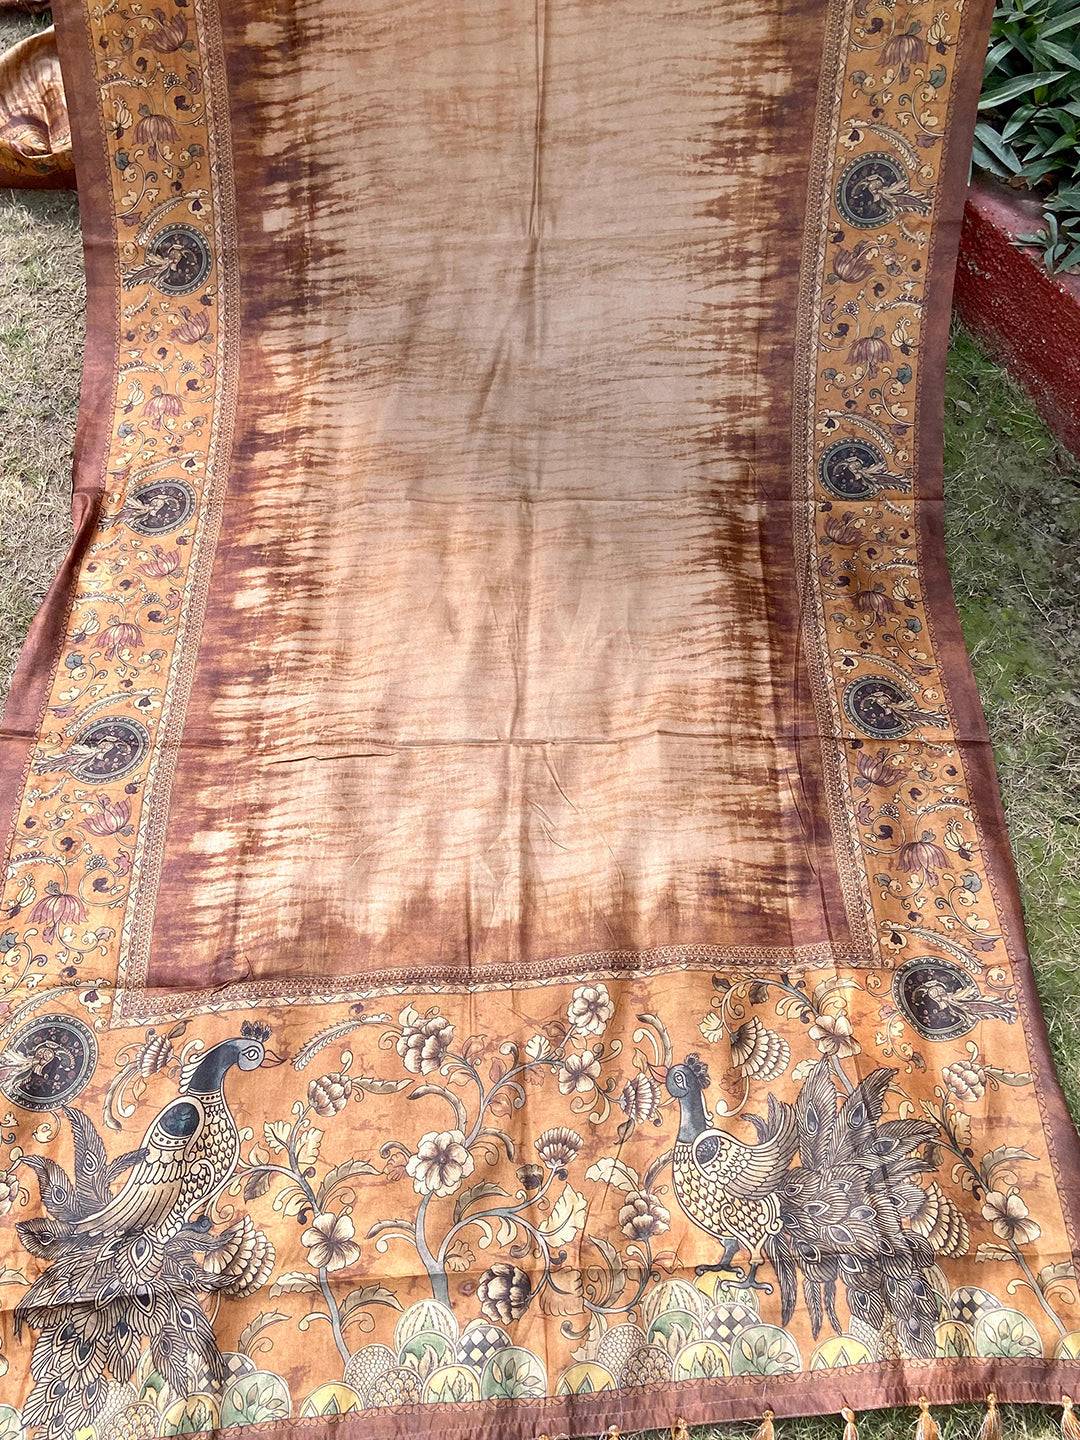 Gold Colour Tussar Silk Saree With Batik and Kalamkari Print Border